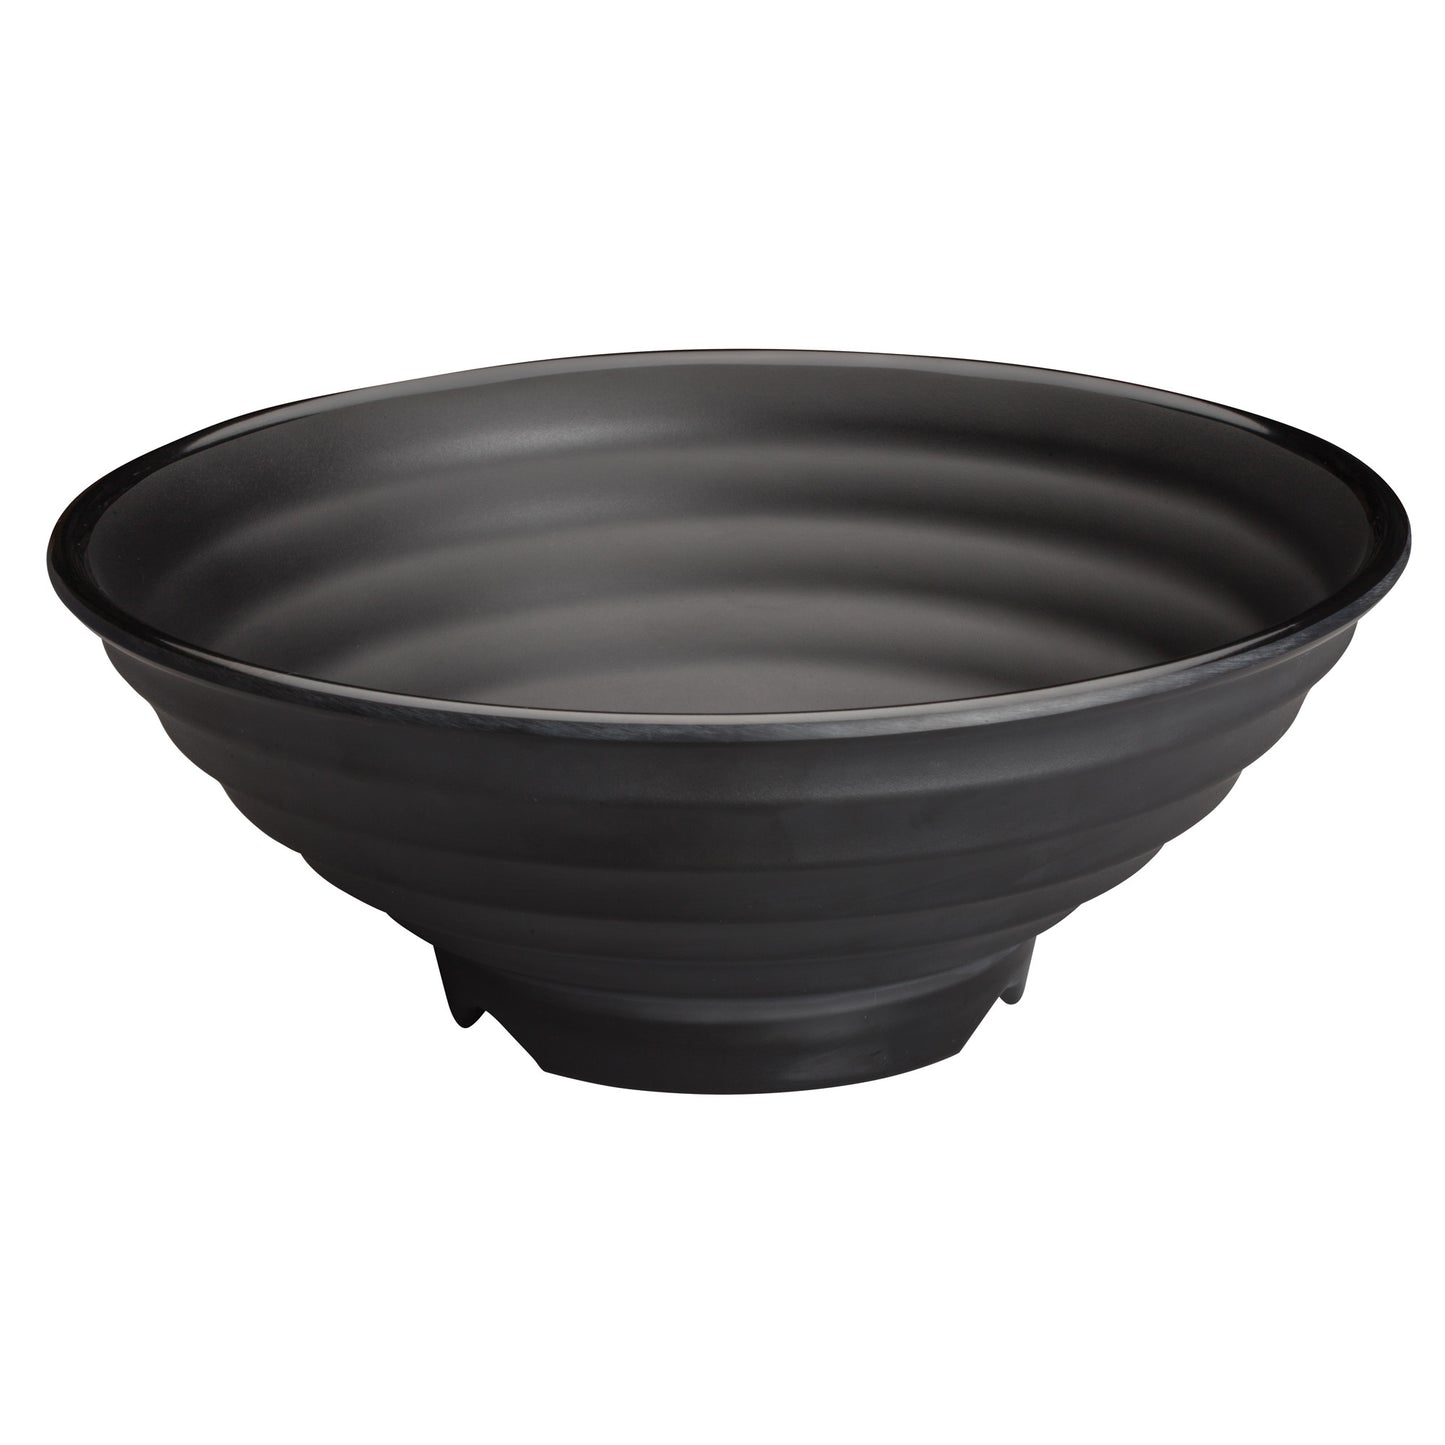 WDM012-303 - 10"Dia Melamine Bowl, Black, 24pcs/case